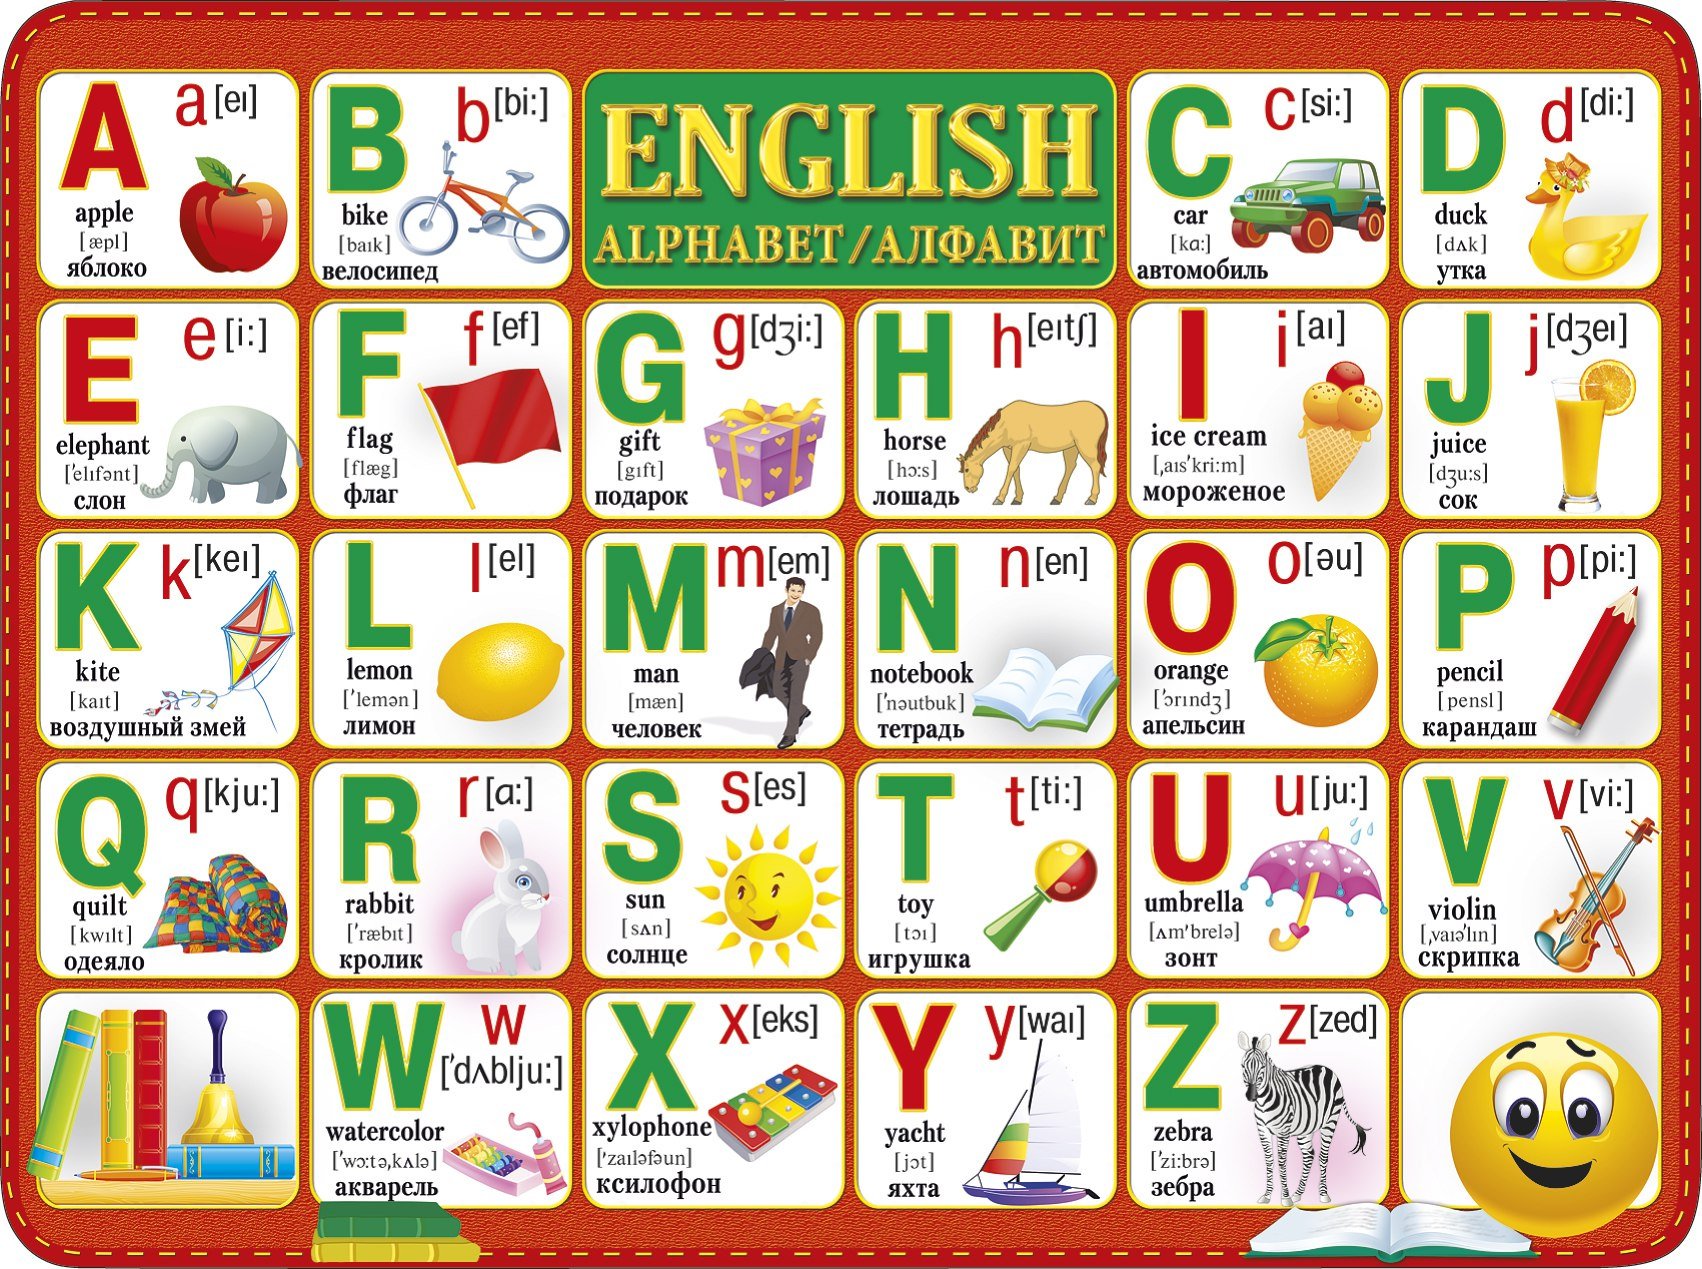 По английски а б в г. Английский алфавит. Английская Азбука для детей. Английский алфавит в картинках. Алфавит английского языка для детей.